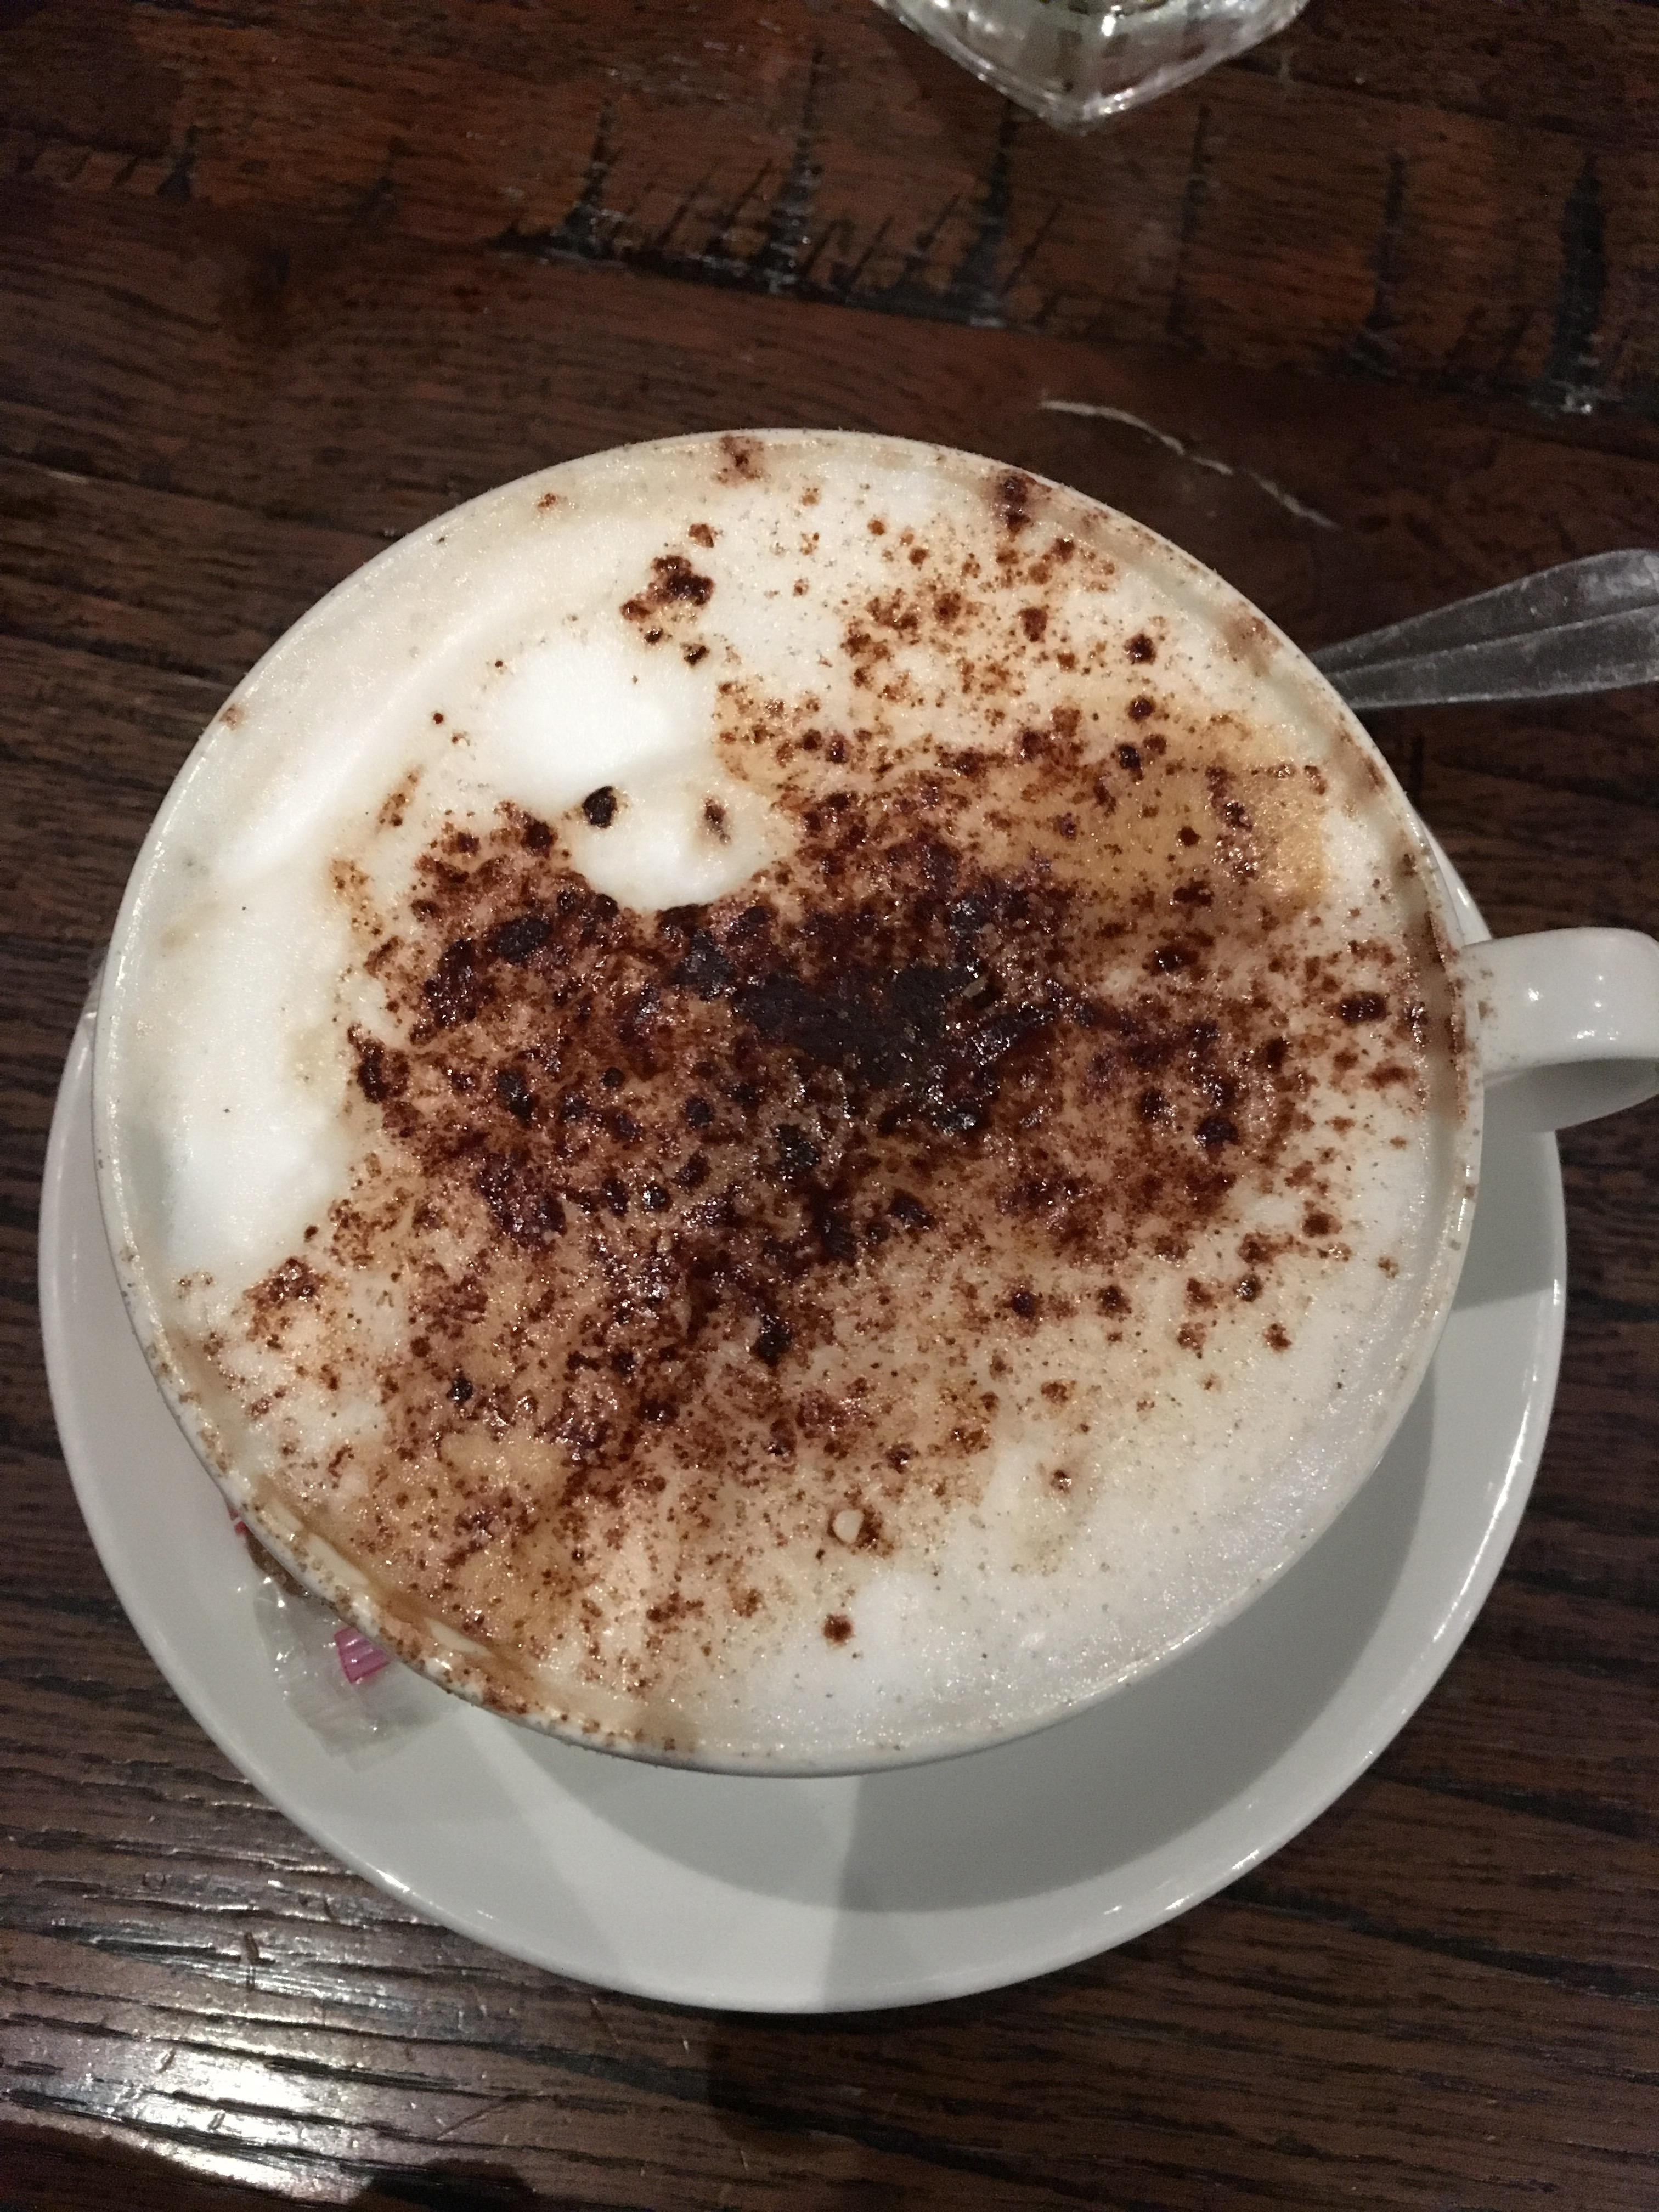 Regular latte